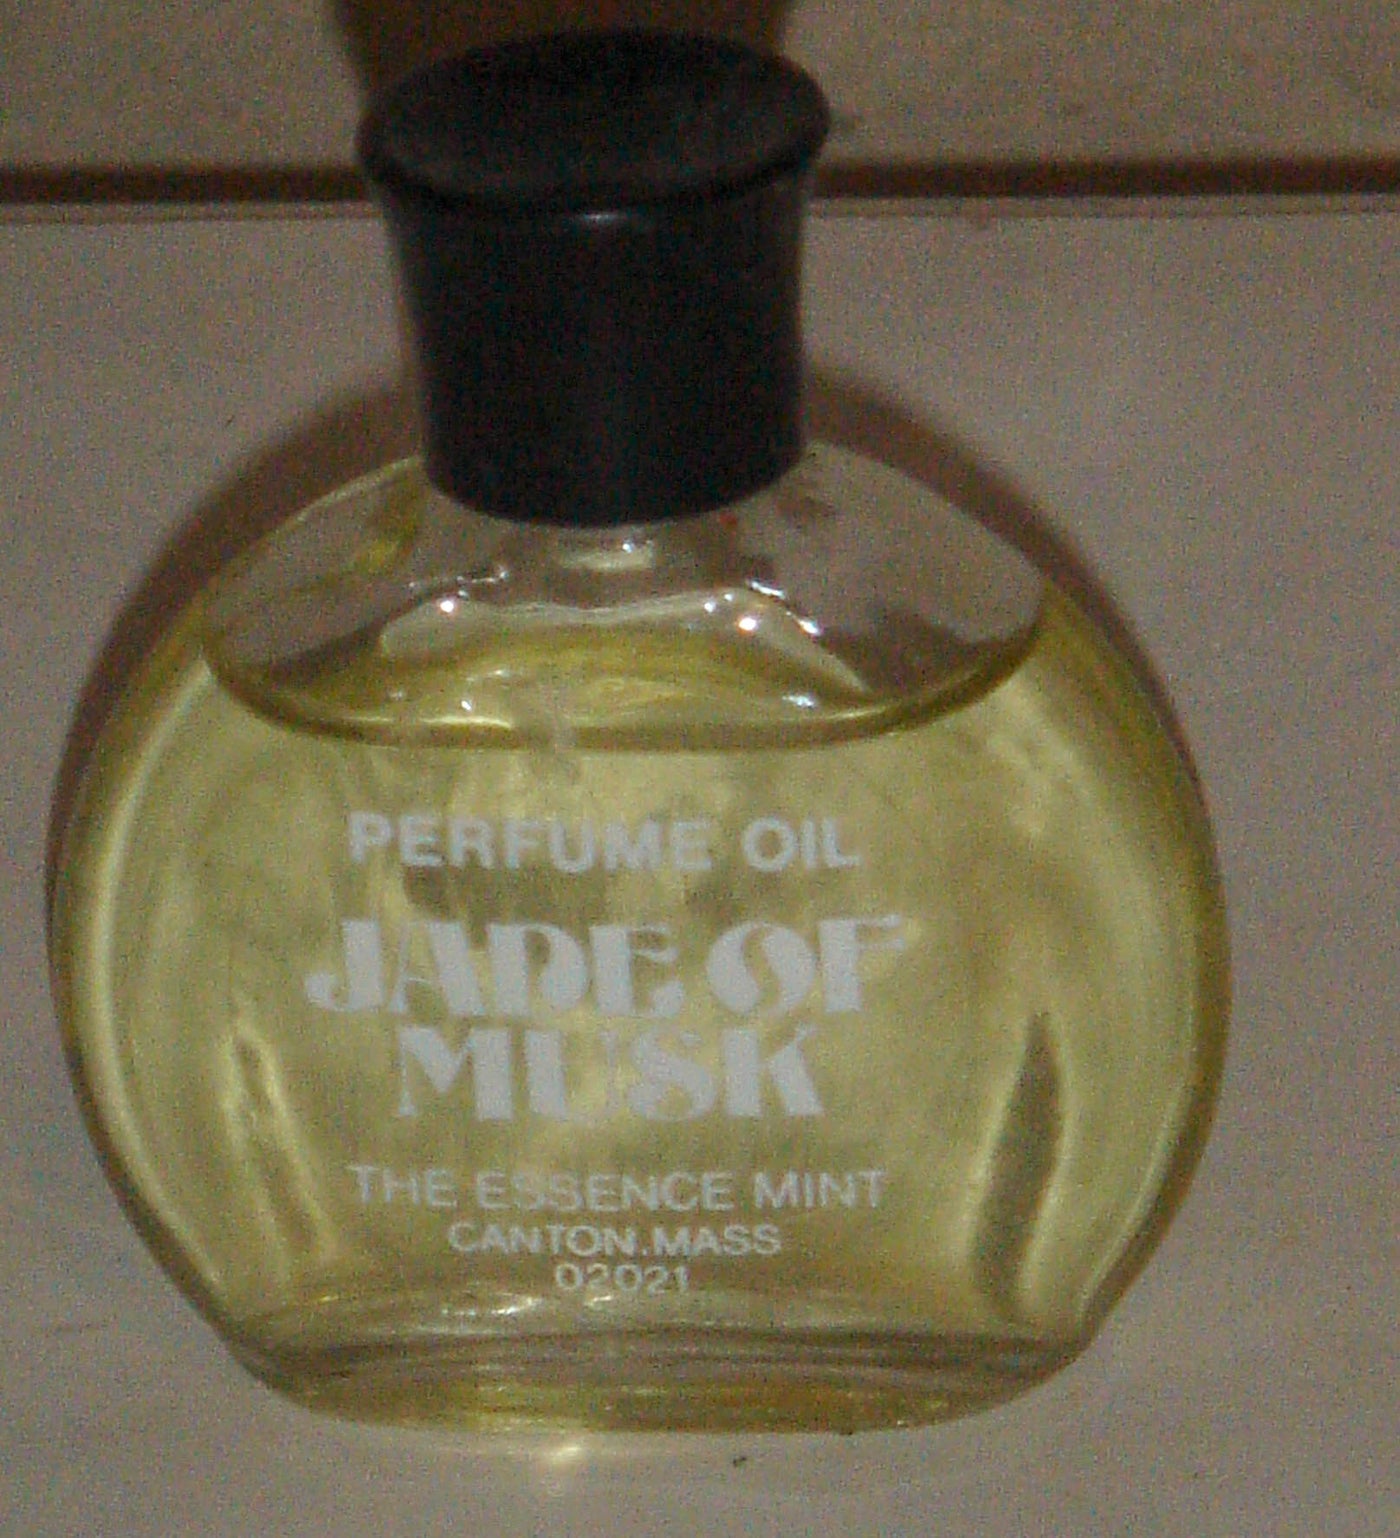 The Essence Mint Jade of Musk Perfume Oil Mini